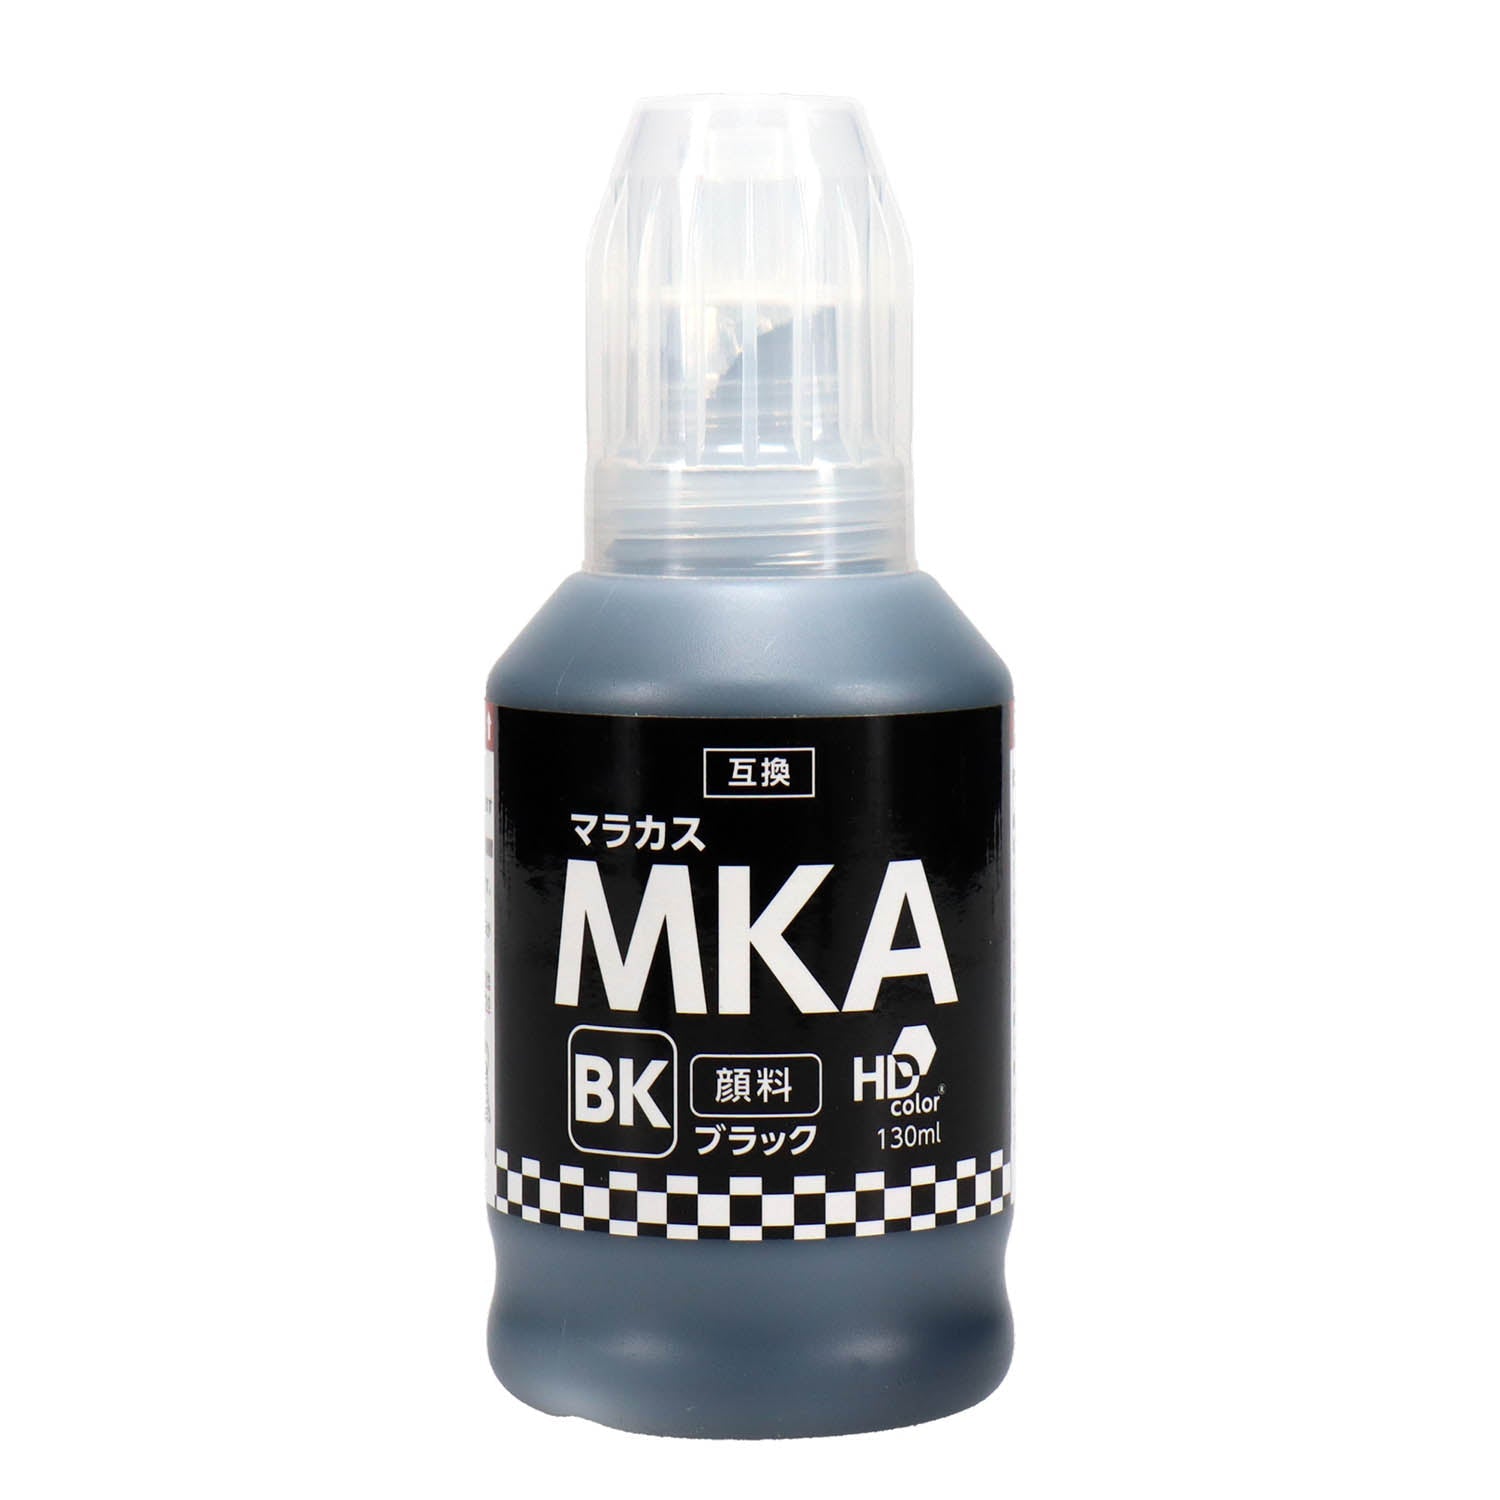 エプソン用 MKA-BK (マラカス) 互換インクボトル ブラック